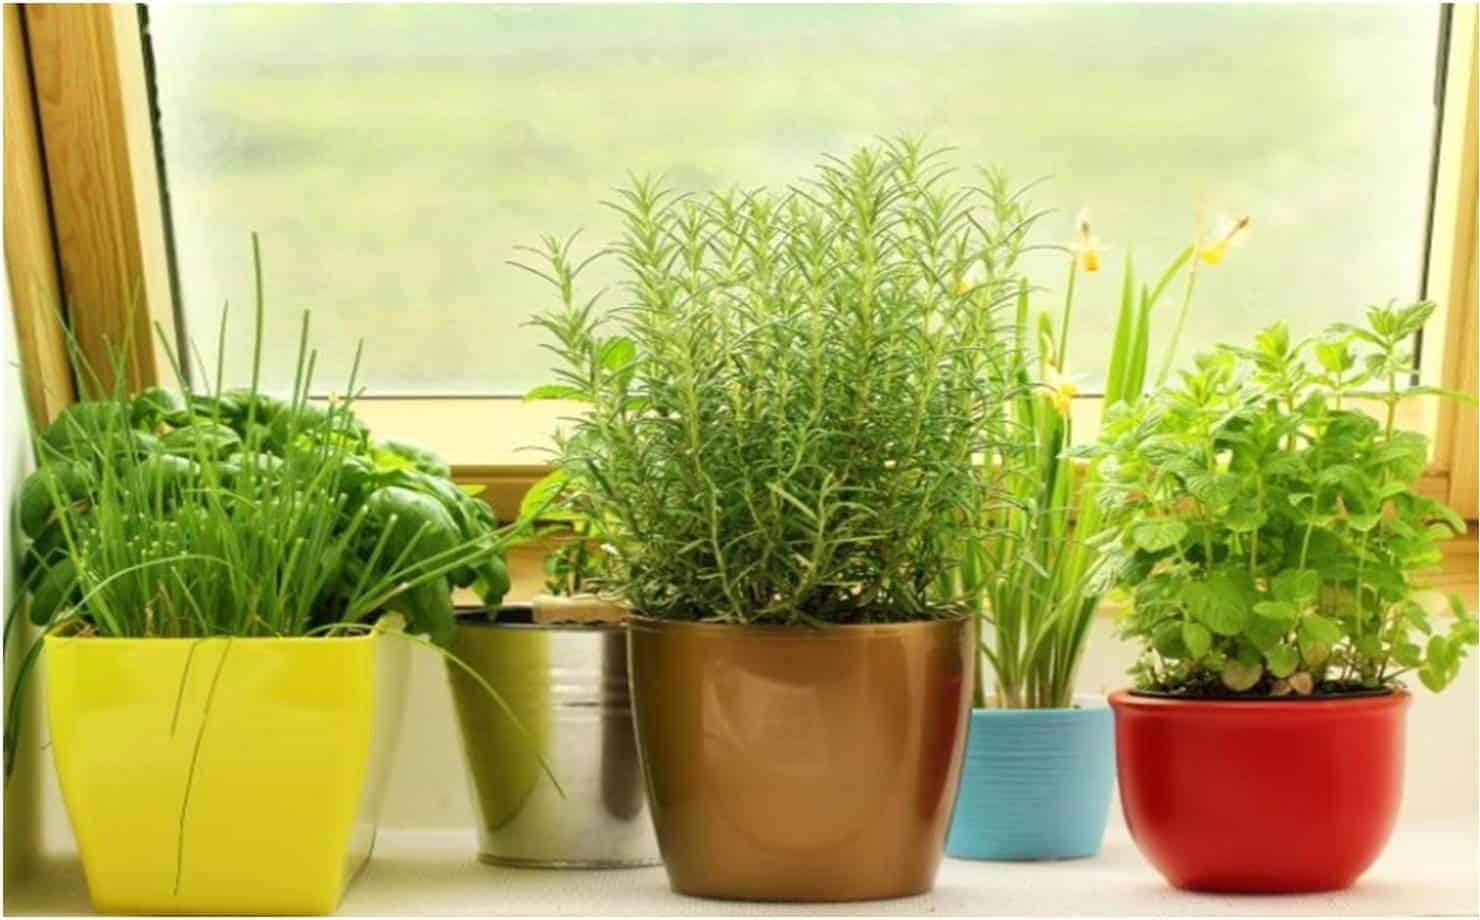 Aprenda a fazer fertilizante caseiro para cuidar das plantas